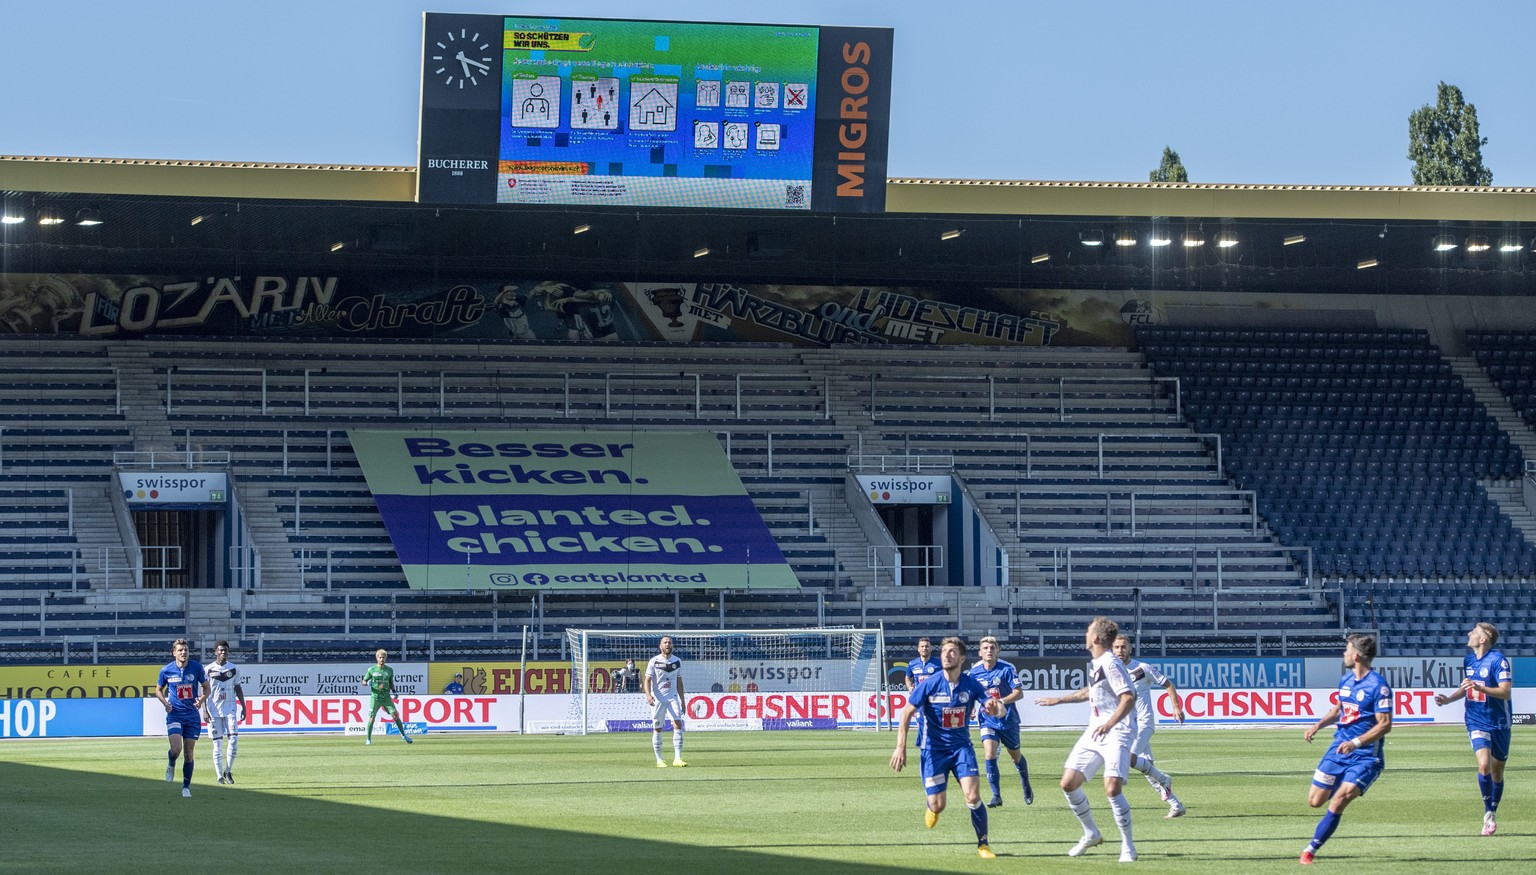 Die Corona Schutzmassanhmen werden im Stadion praesentiert beim Super League Meisterschaftsspiel zwischen dem FC Luzern und dem FC Lugano vom Sonntag, 12. Juli 2020 in Luzern. (KEYSTONE/Urs Flueeler)